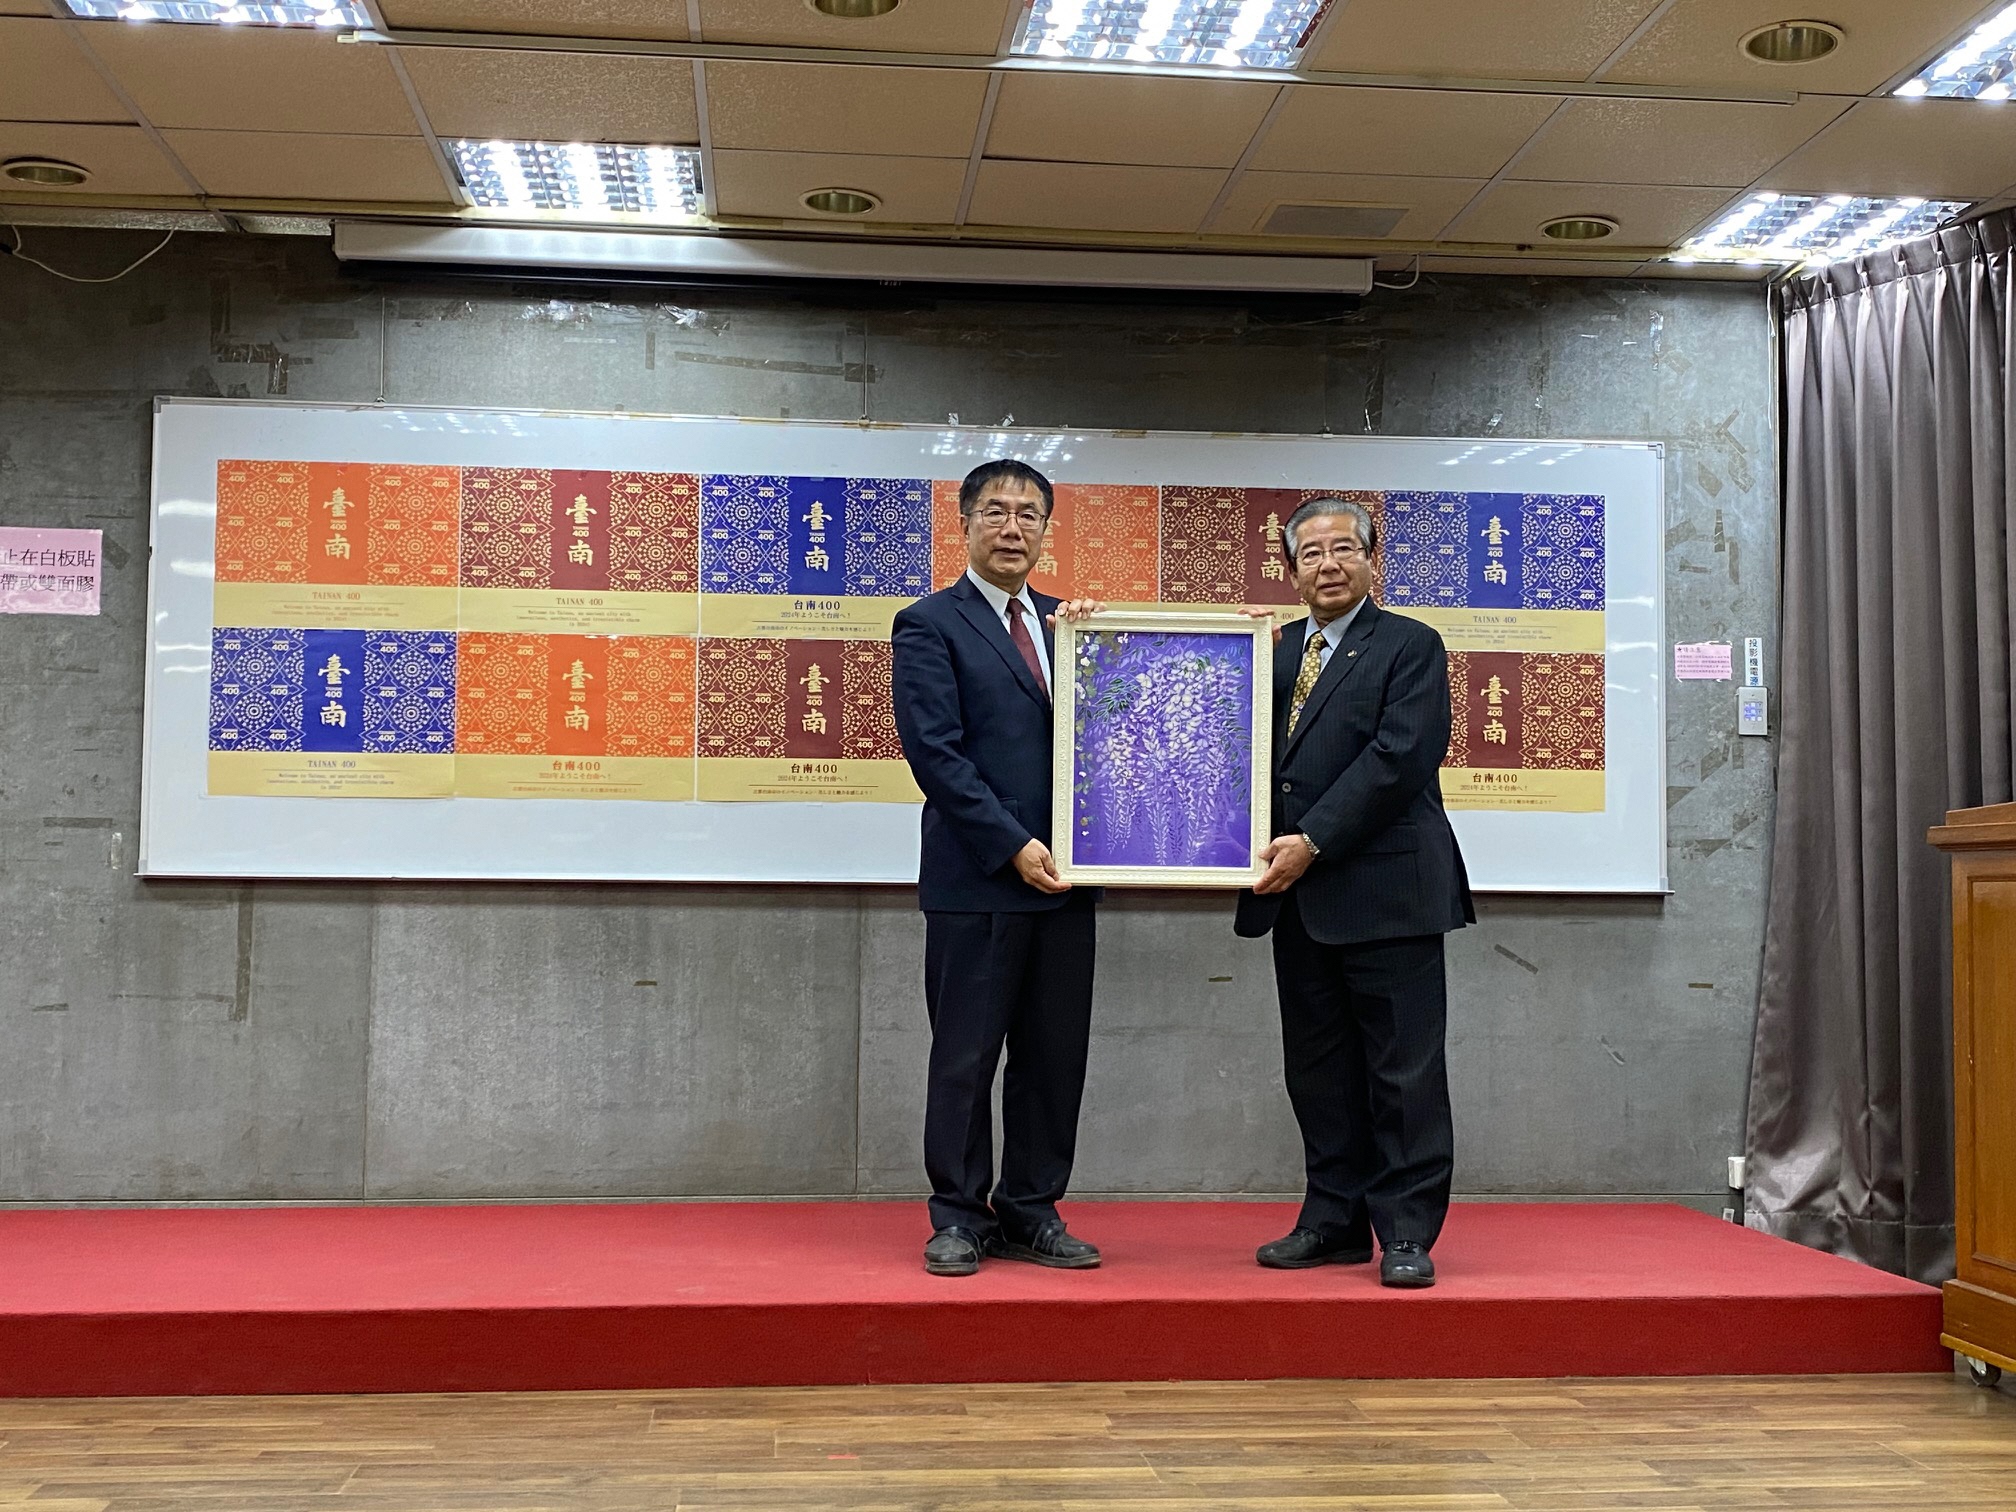 台南市長への記念品(市場良子氏 作の染物)贈呈